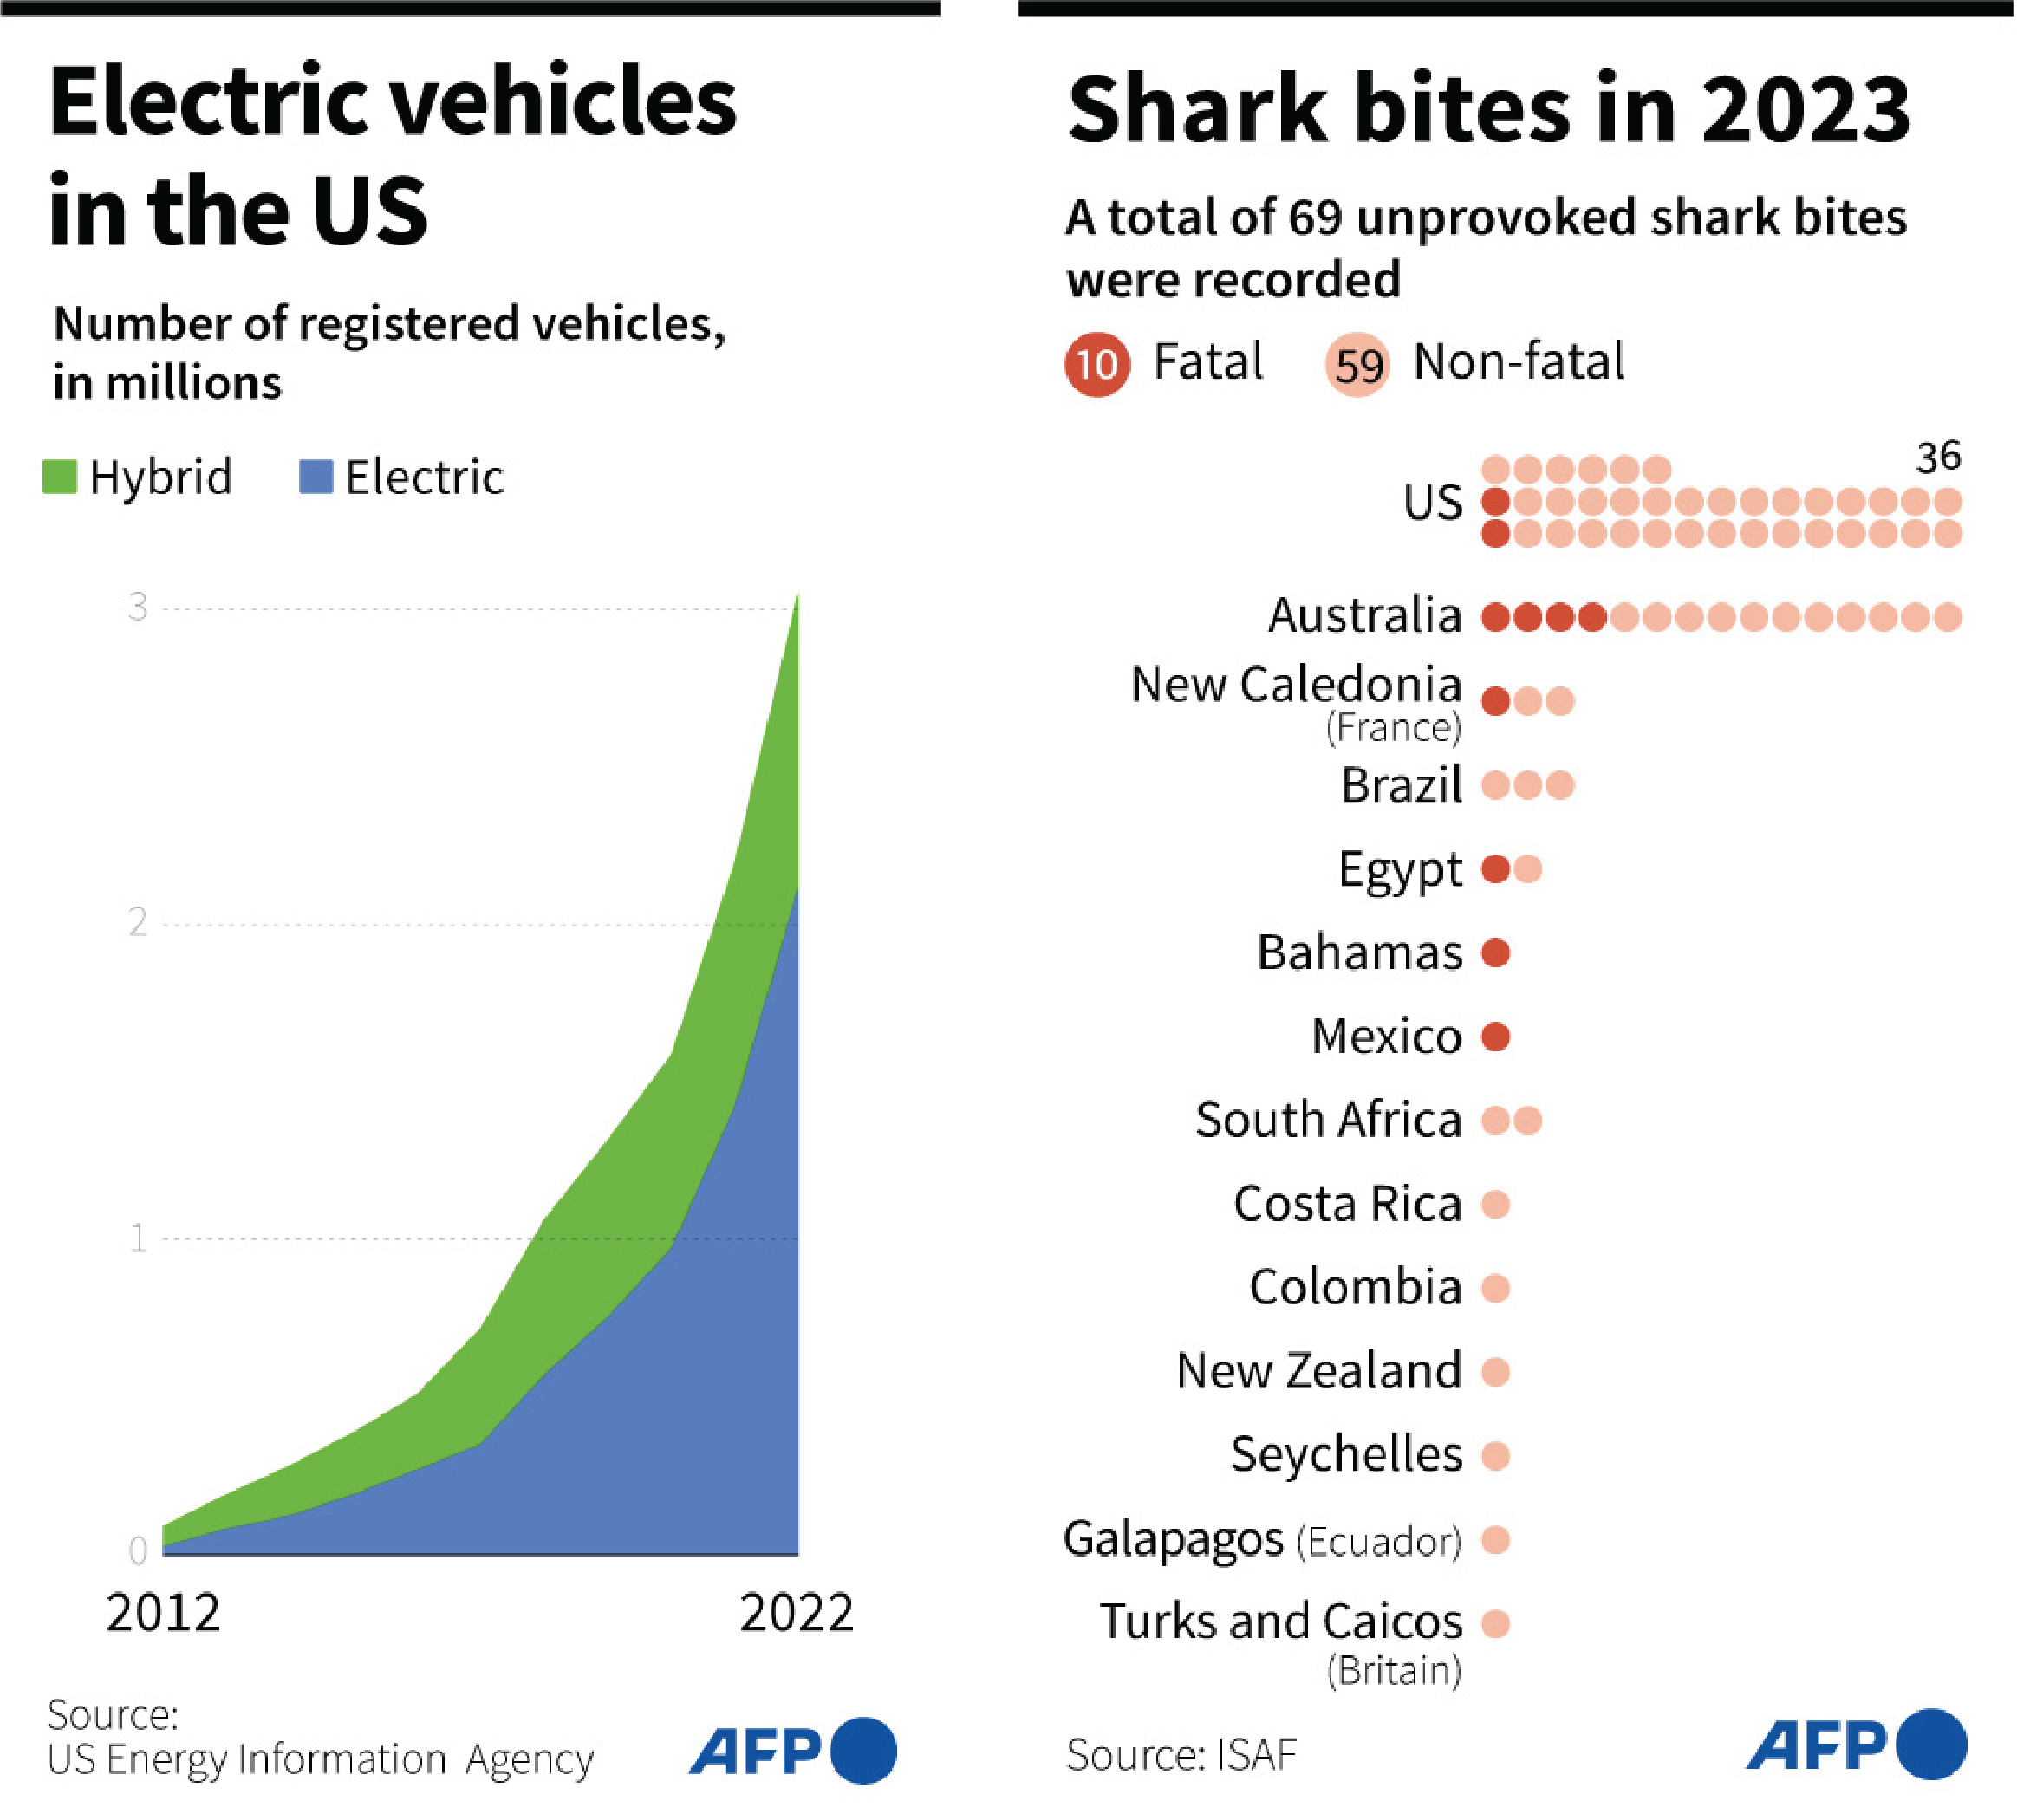 Shark and EV data